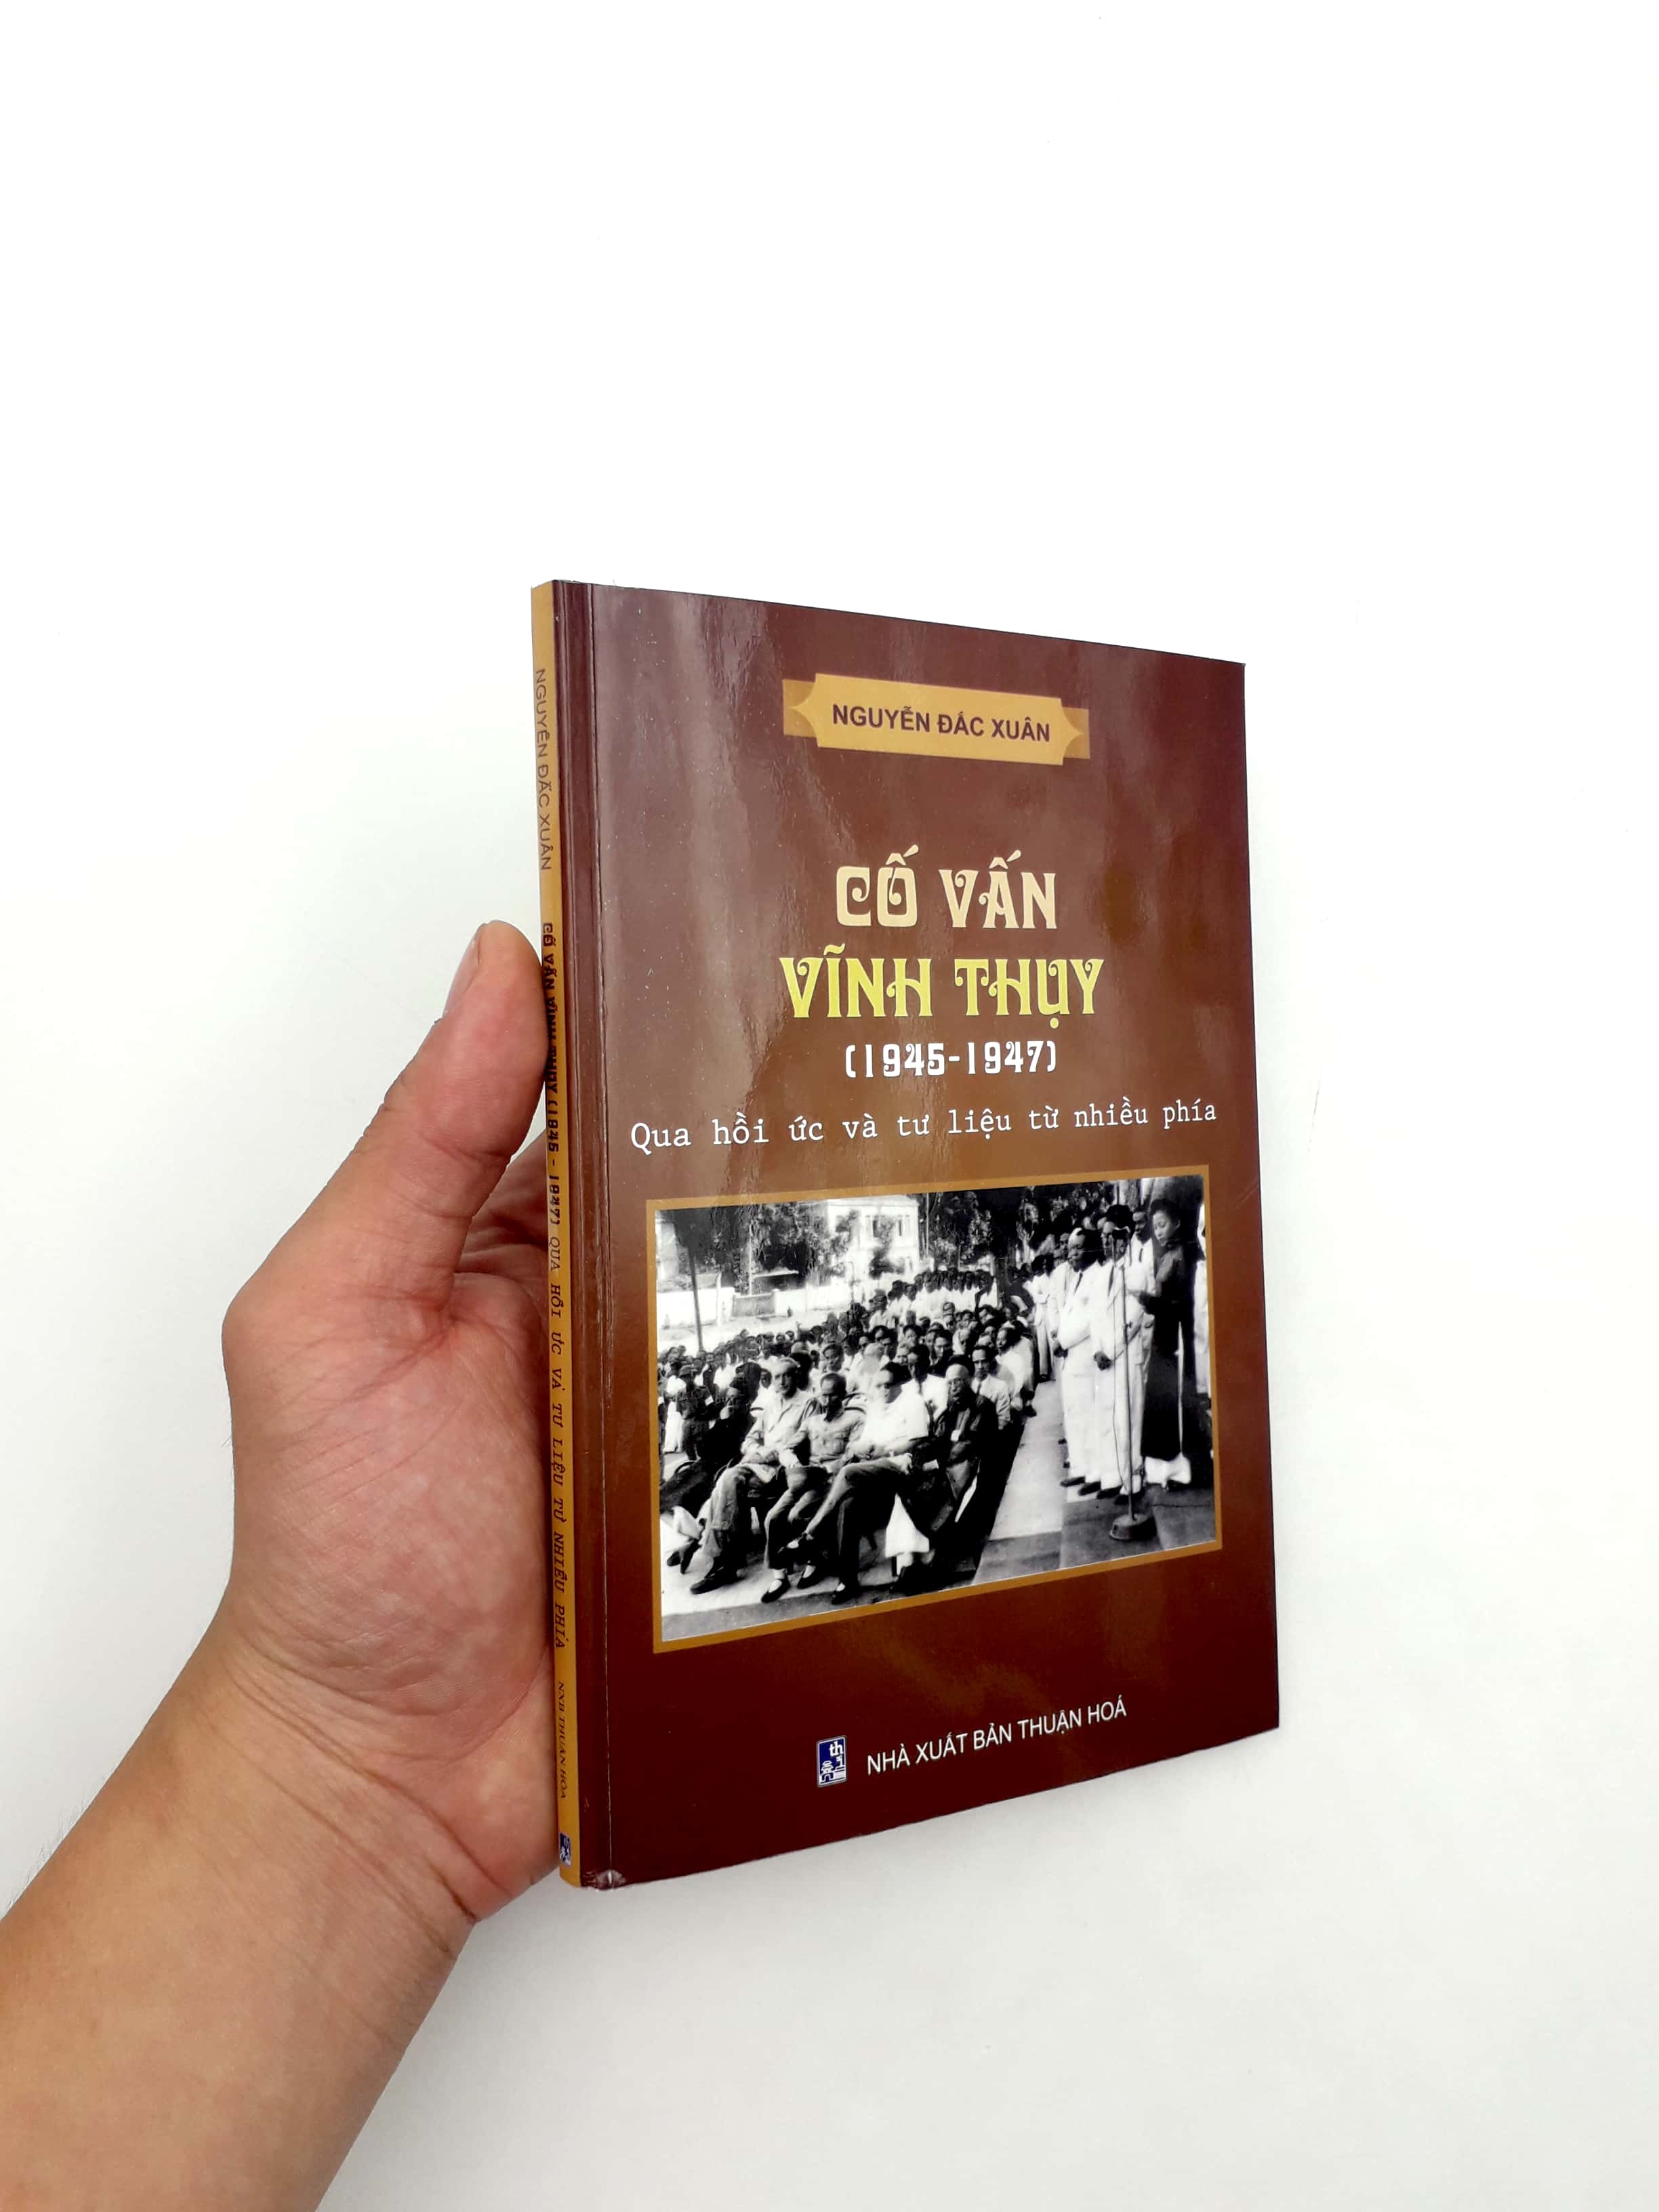 Sách Cố Vấn Vĩnh Thụy (1945-1947) Qua Hồi Ức Và Tư Liệu Từ Nhiều Phía